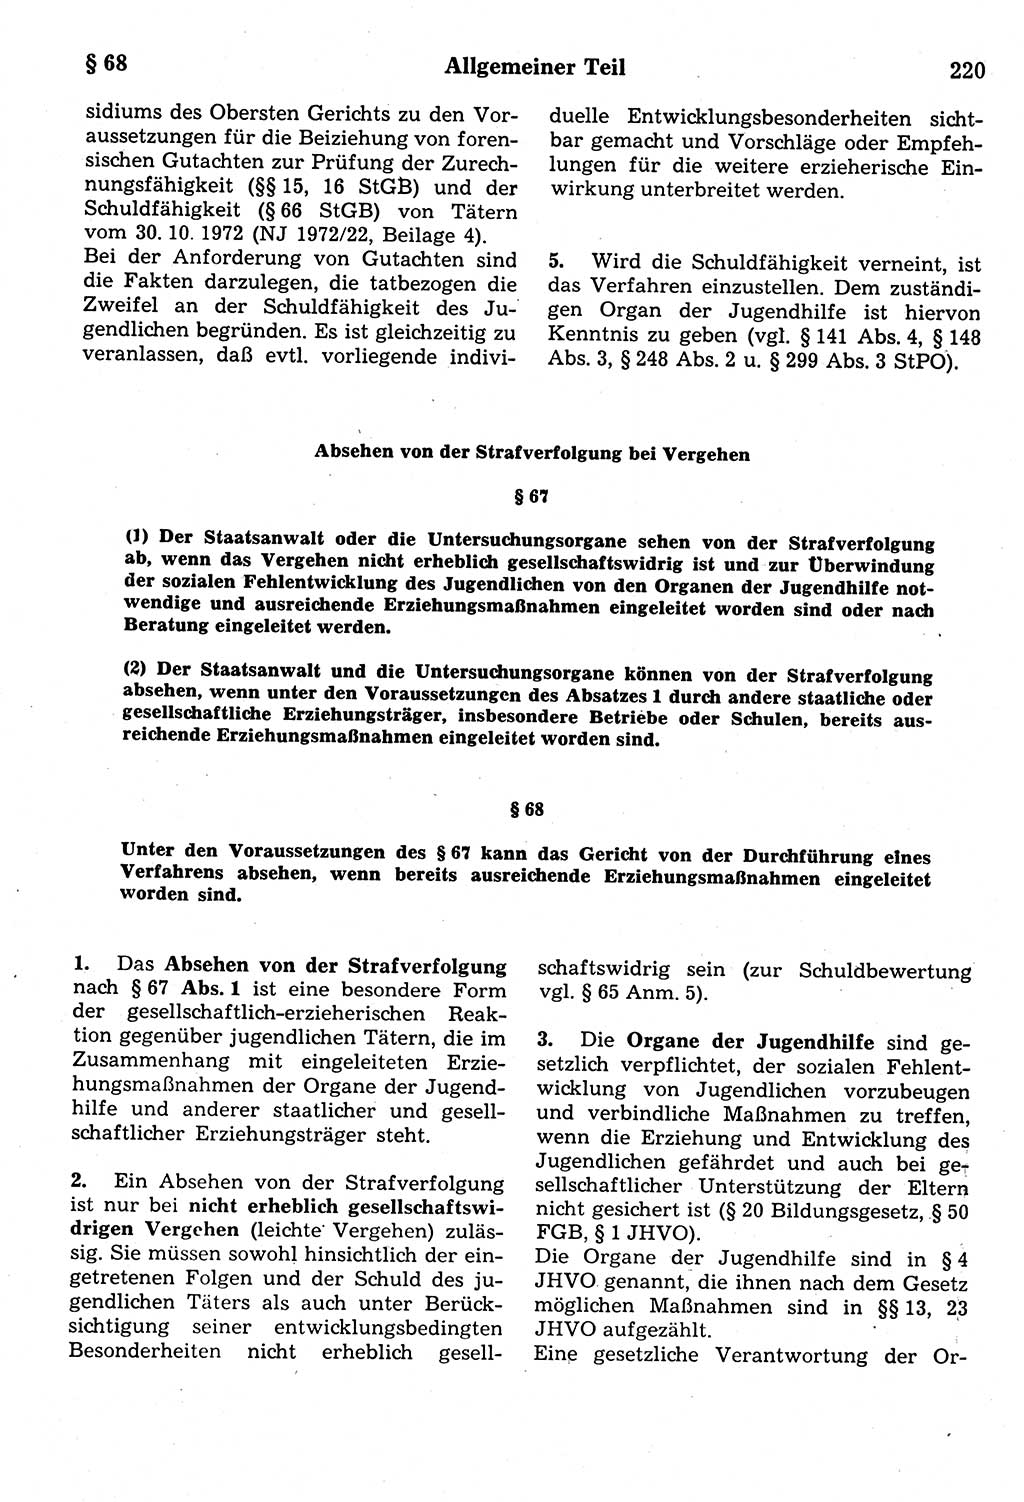 Strafrecht der Deutschen Demokratischen Republik (DDR), Kommentar zum Strafgesetzbuch (StGB) 1987, Seite 220 (Strafr. DDR Komm. StGB 1987, S. 220)